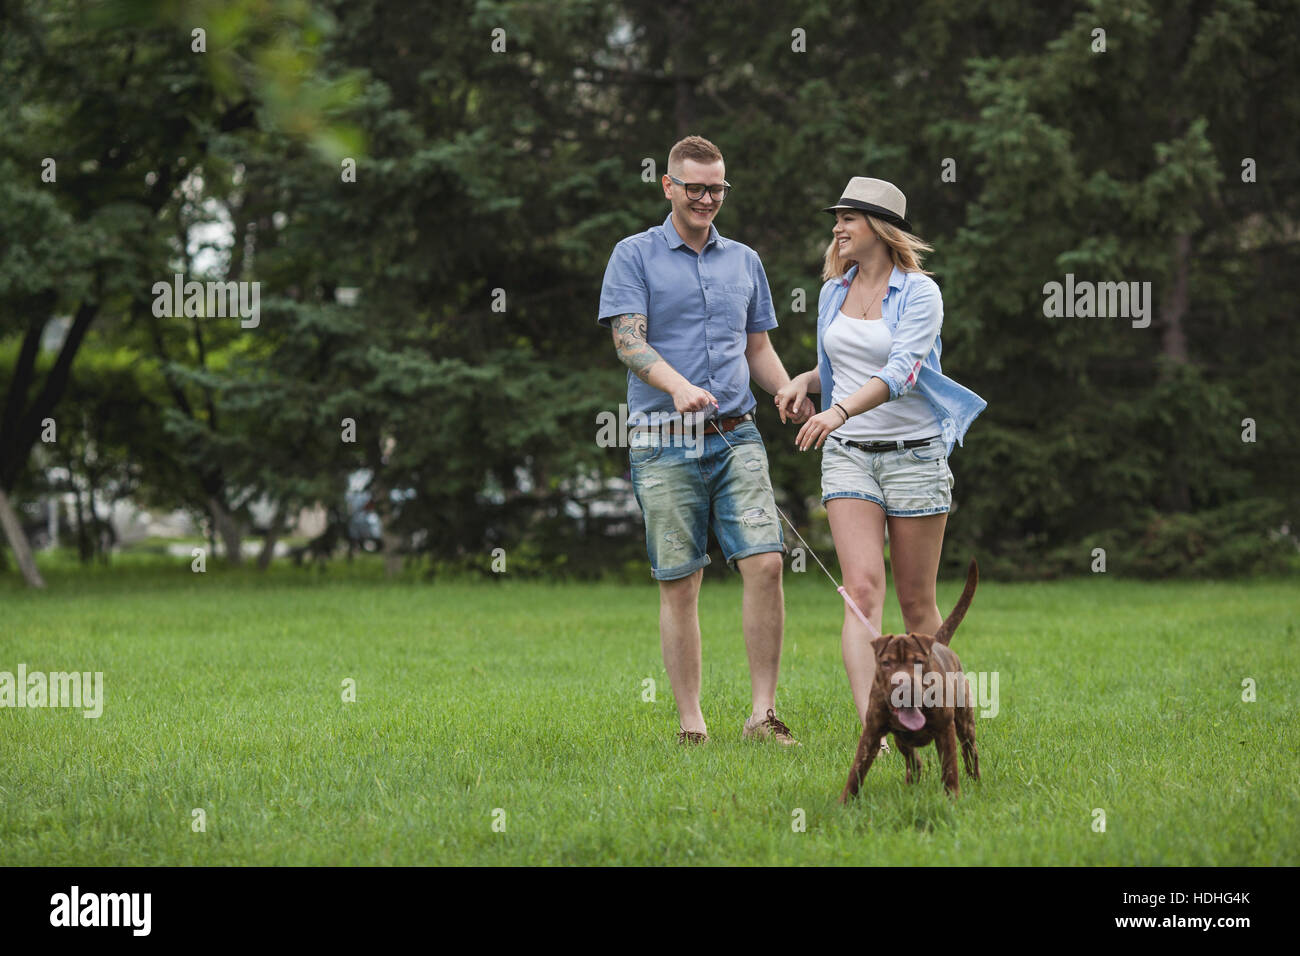 Ein junges Paar zu Fuß ihre Shar-pei/Staffordshire Terrier in einem park Stockfoto